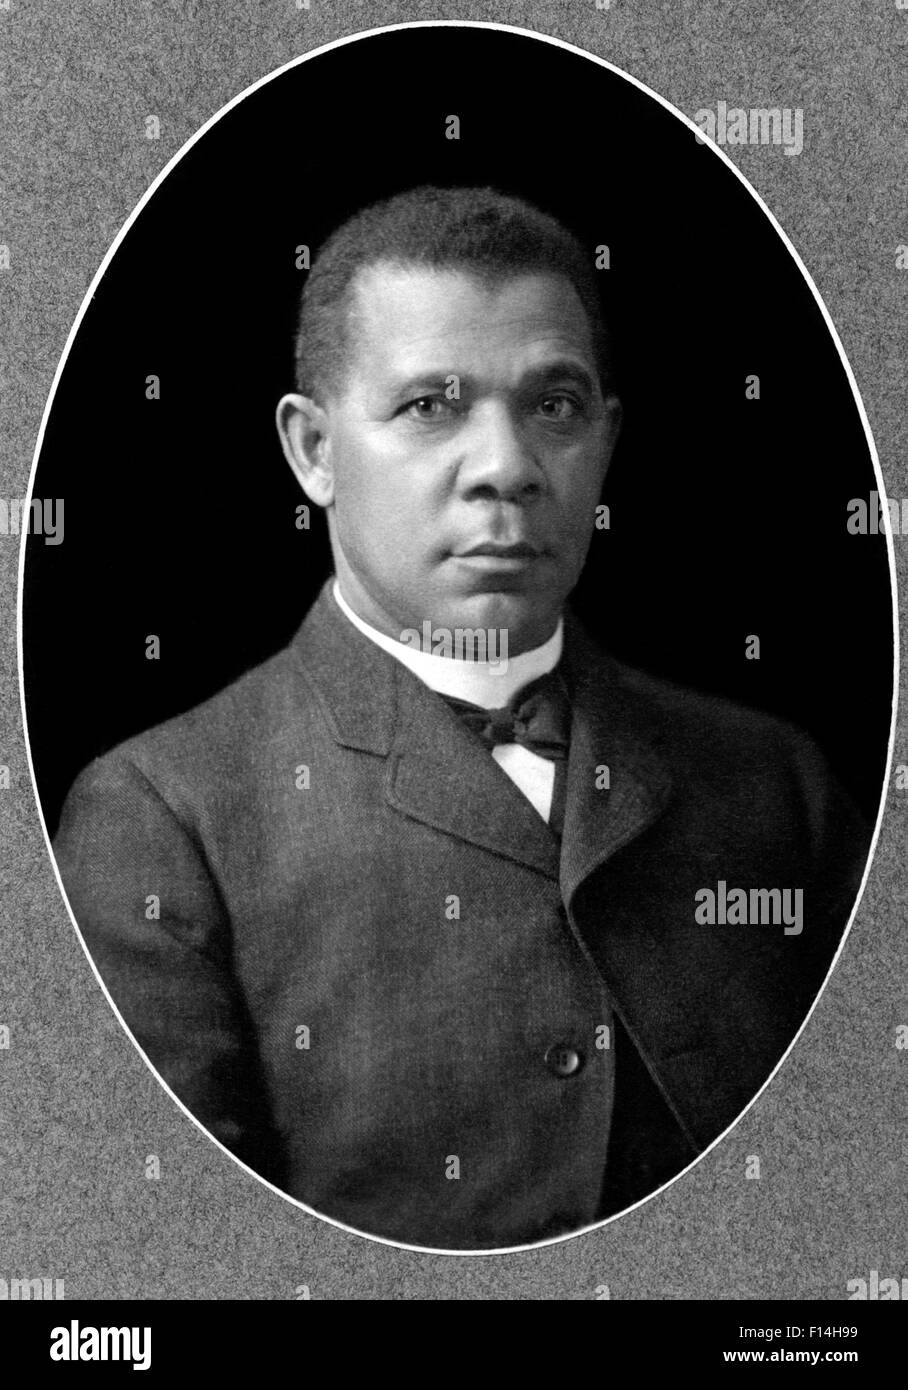 Ottocento e Novecento americano africano educatore autore oratore Booker T. WASHINGTON preside dell istituto di Tuskegee ritratto circa 1901 Foto Stock